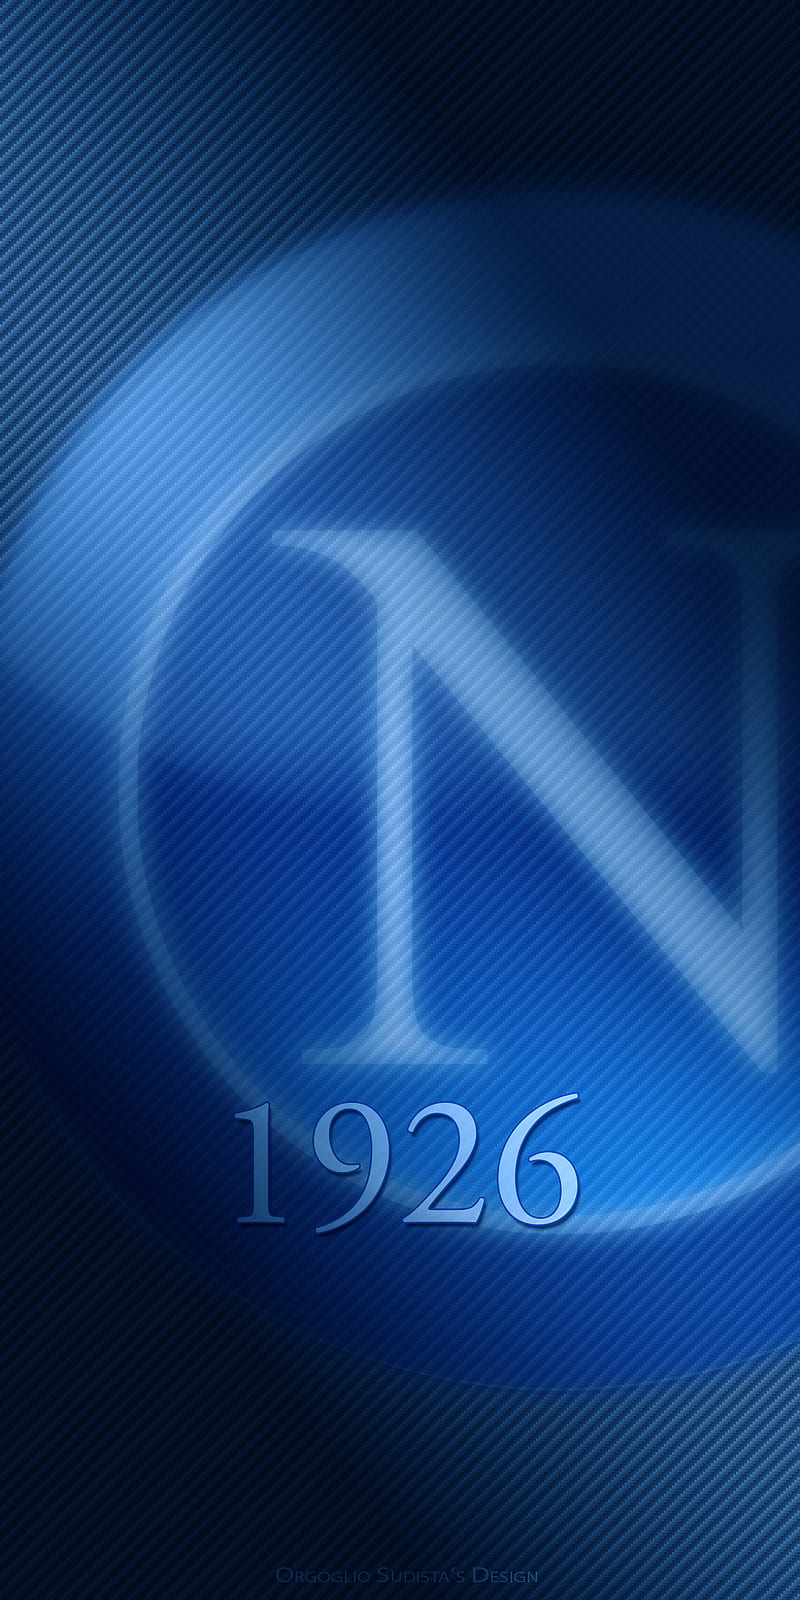 SSC Napoli, 1926, azzurri, azzurro, blue, calcio, champions, curva, football, hamsik, insigne, juve merda, maradona, naples, scudetto, team, ultra, vesuvio, HD phone wallpaper